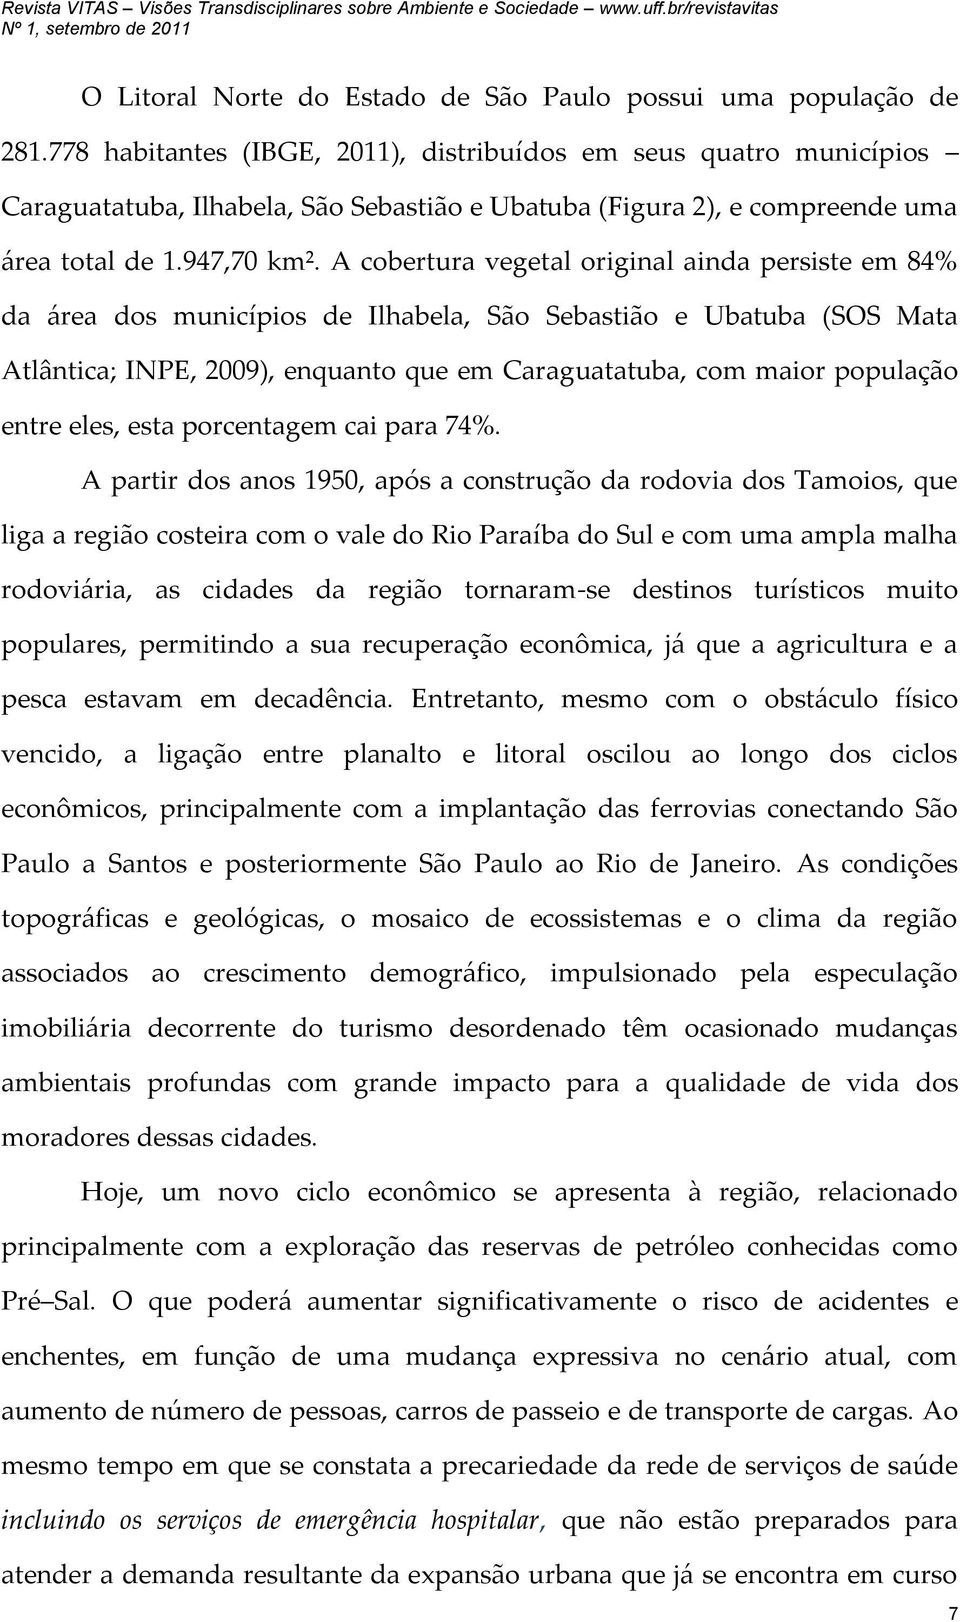 A cobertura vegetal original ainda persiste em 84% da área dos municípios de Ilhabela, São Sebastião e Ubatuba (SOS Mata Atlântica; INPE, 2009), enquanto que em Caraguatatuba, com maior população